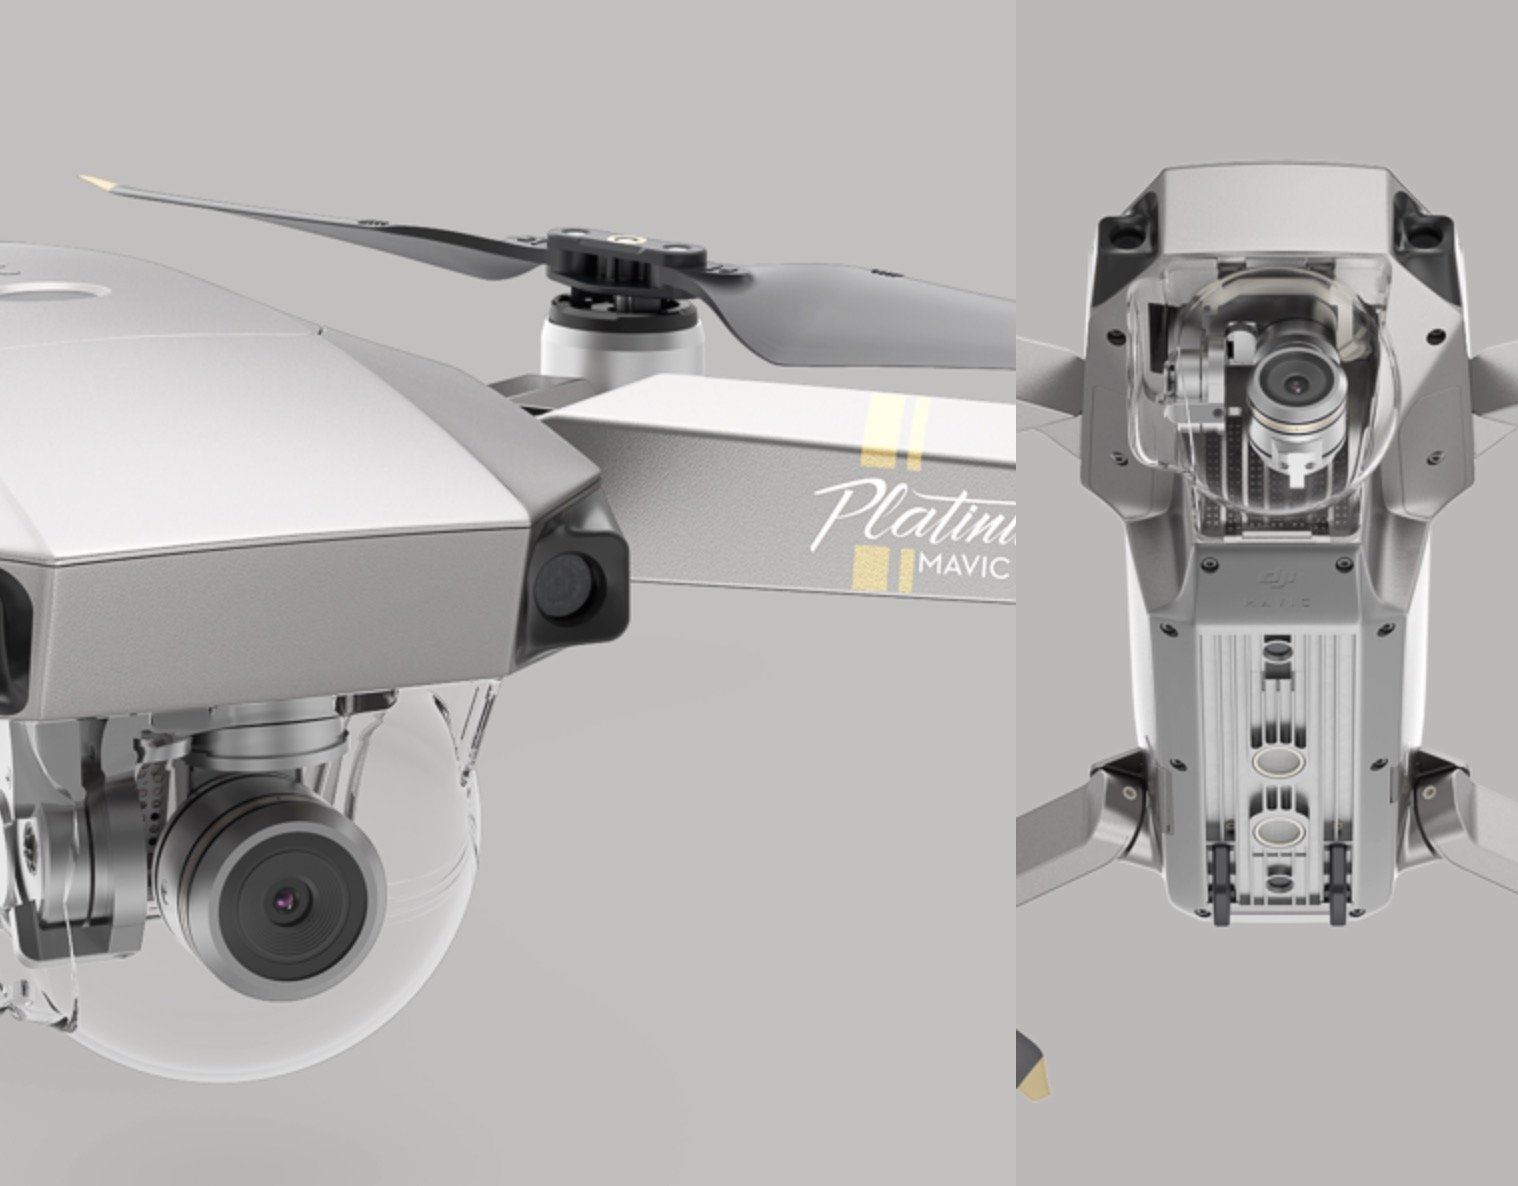 DJI stellt auf der IFA 2017 zwei neue Drohnen aus - DJI Phantom